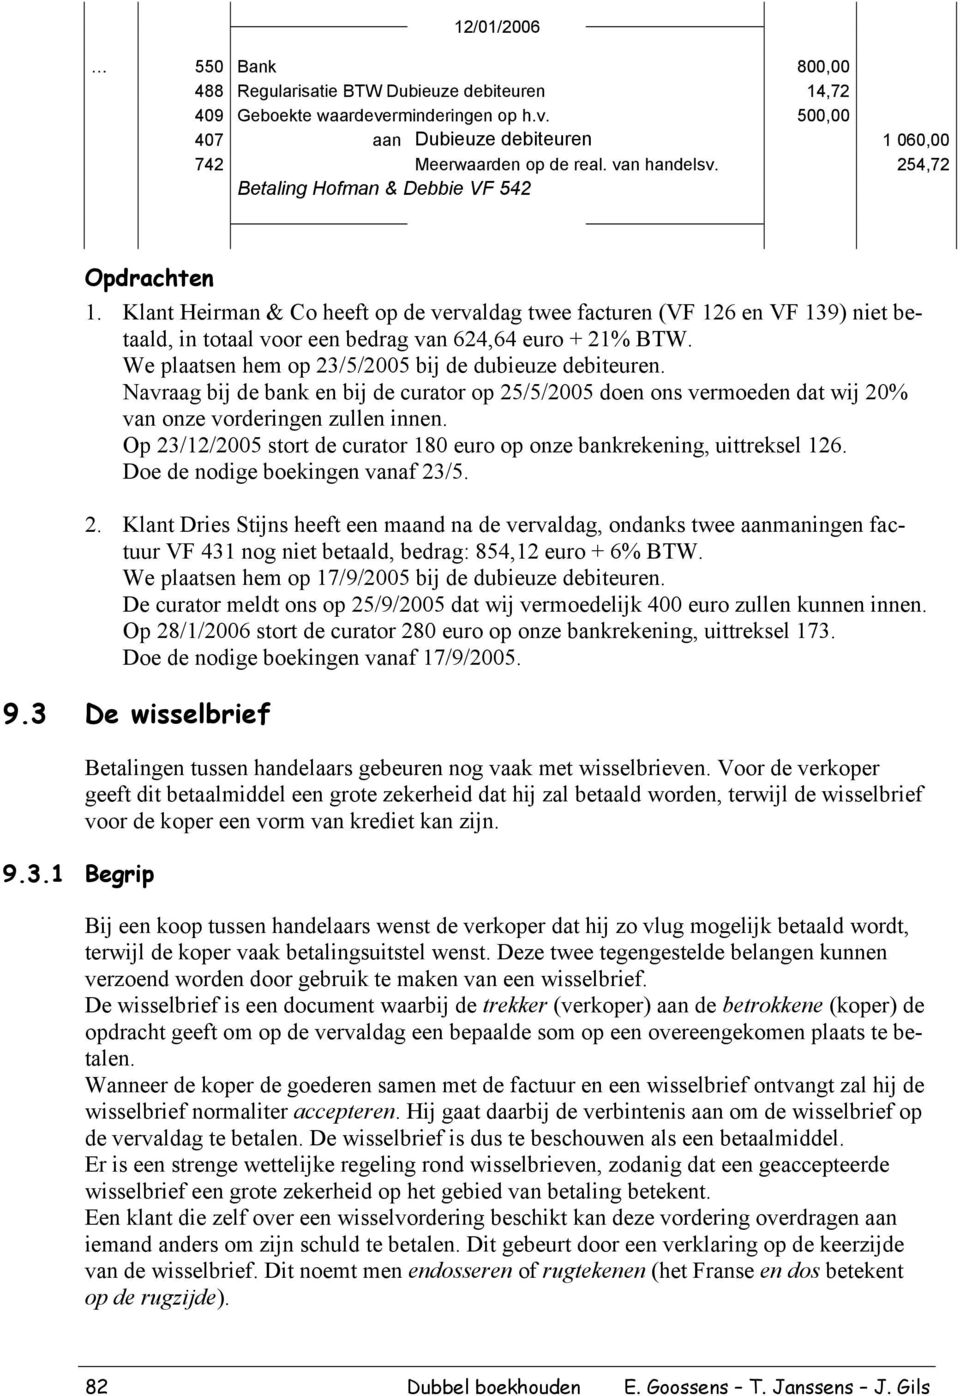 Klant Heirman & Co heeft op de vervaldag twee facturen (VF 126 en VF 139) niet betaald, in totaal voor een bedrag van 624,64 euro + 21% BTW. We plaatsen hem op 23/5/2005 bij de dubieuze debiteuren.